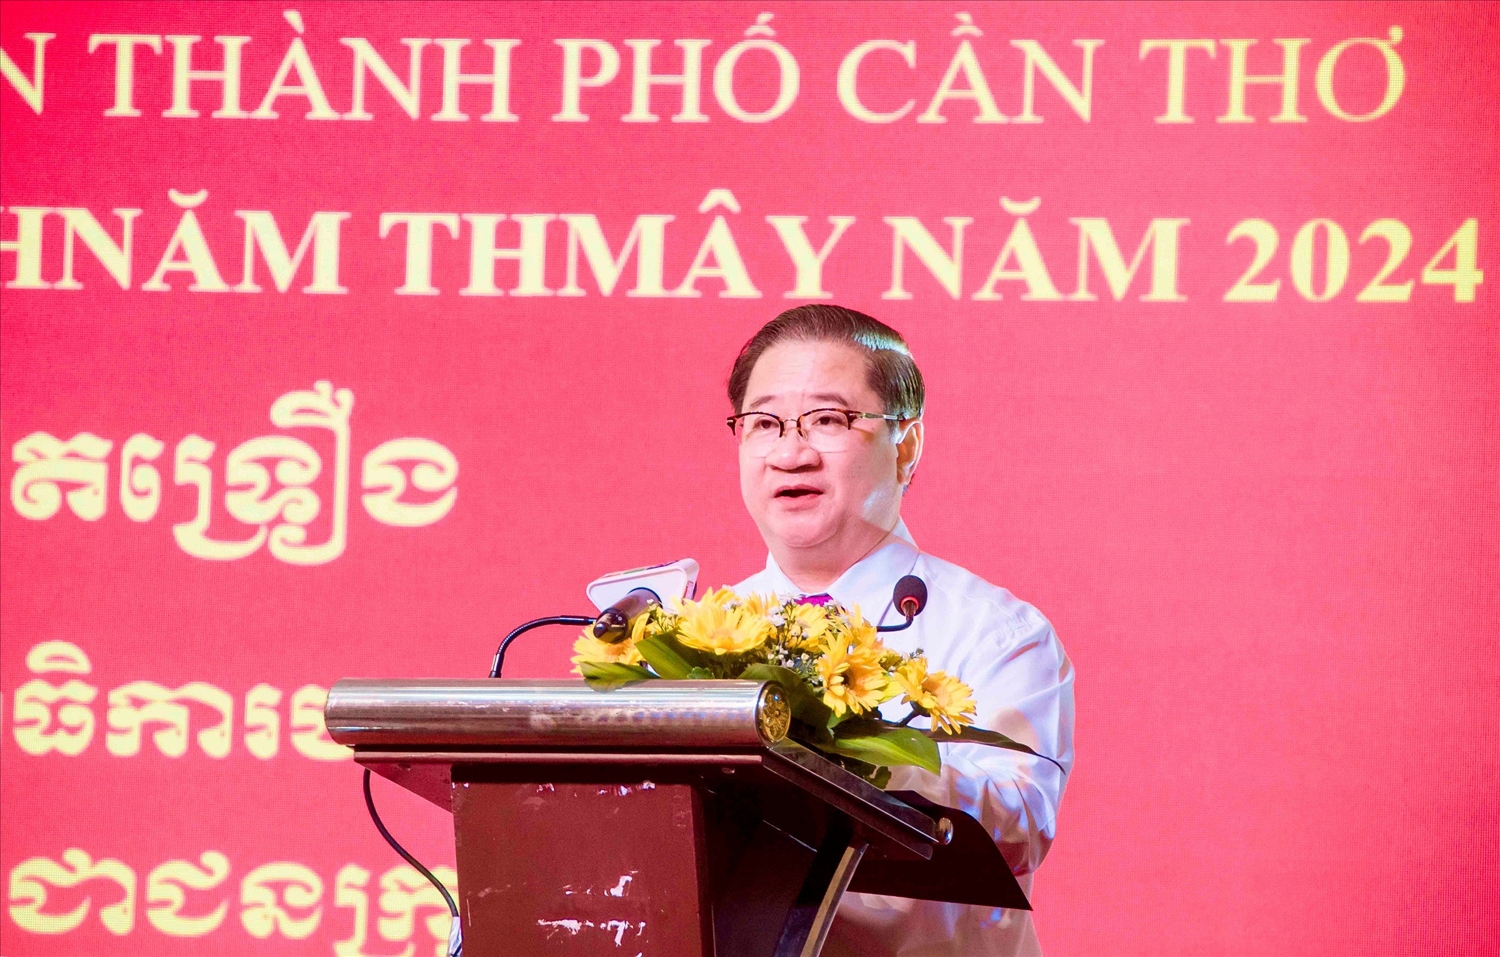 Ông Trần Việt Việt Trường, Chủ tịch UBND TP. Cần Thơ đọc thư chúc Tết Chôl Chnăm Thmây năm 2024